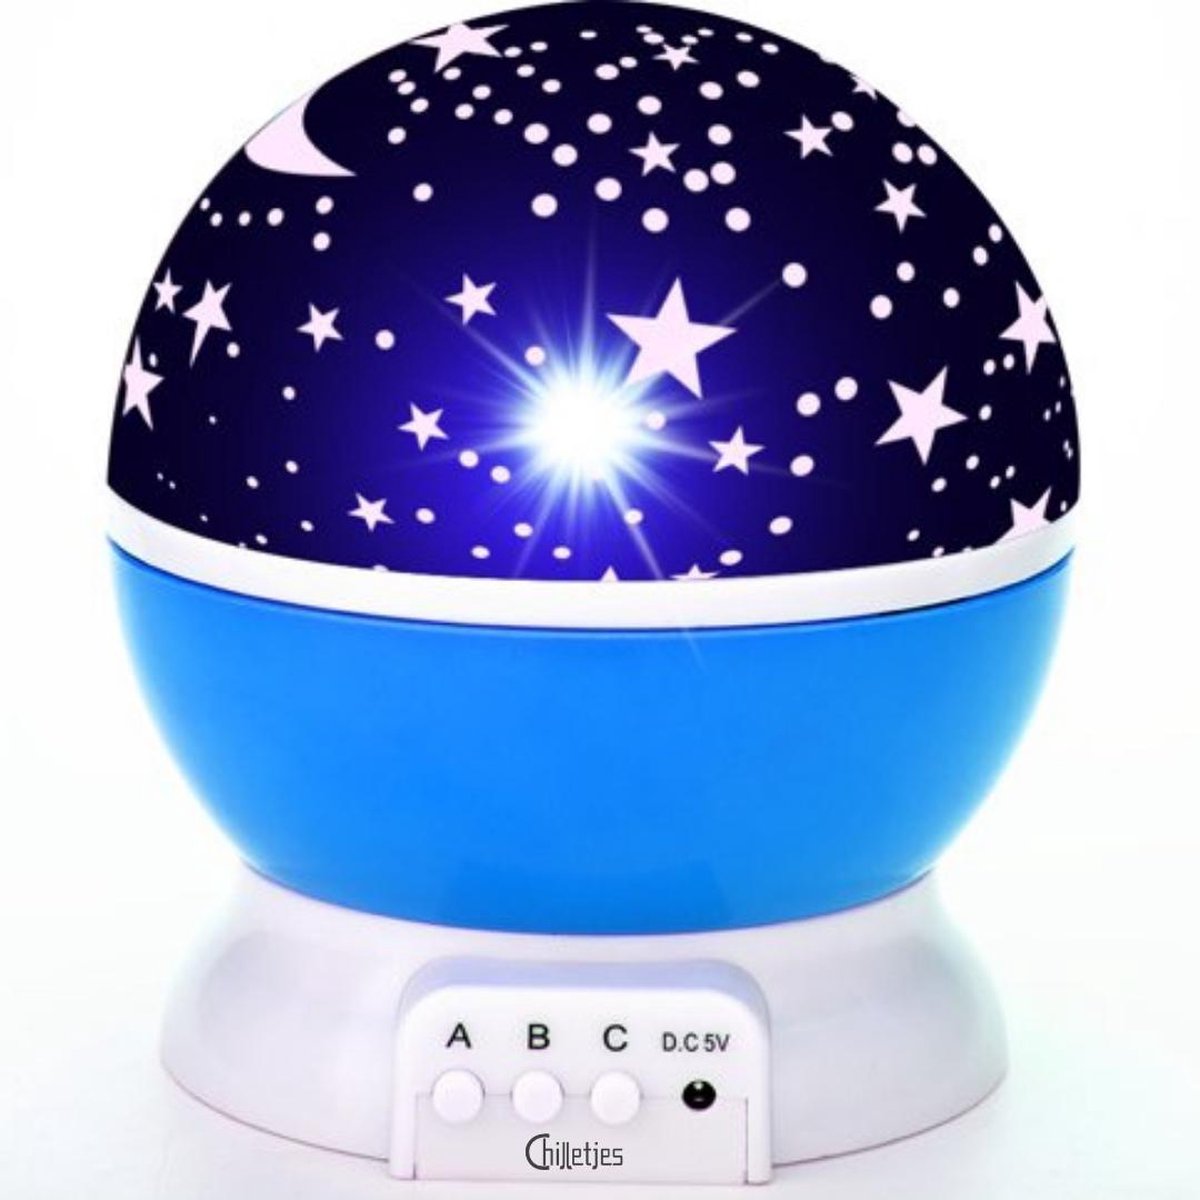 DEL lumière nuit étoilé Projection Bébé Enfants'S STAR Chambre Belle étoilé